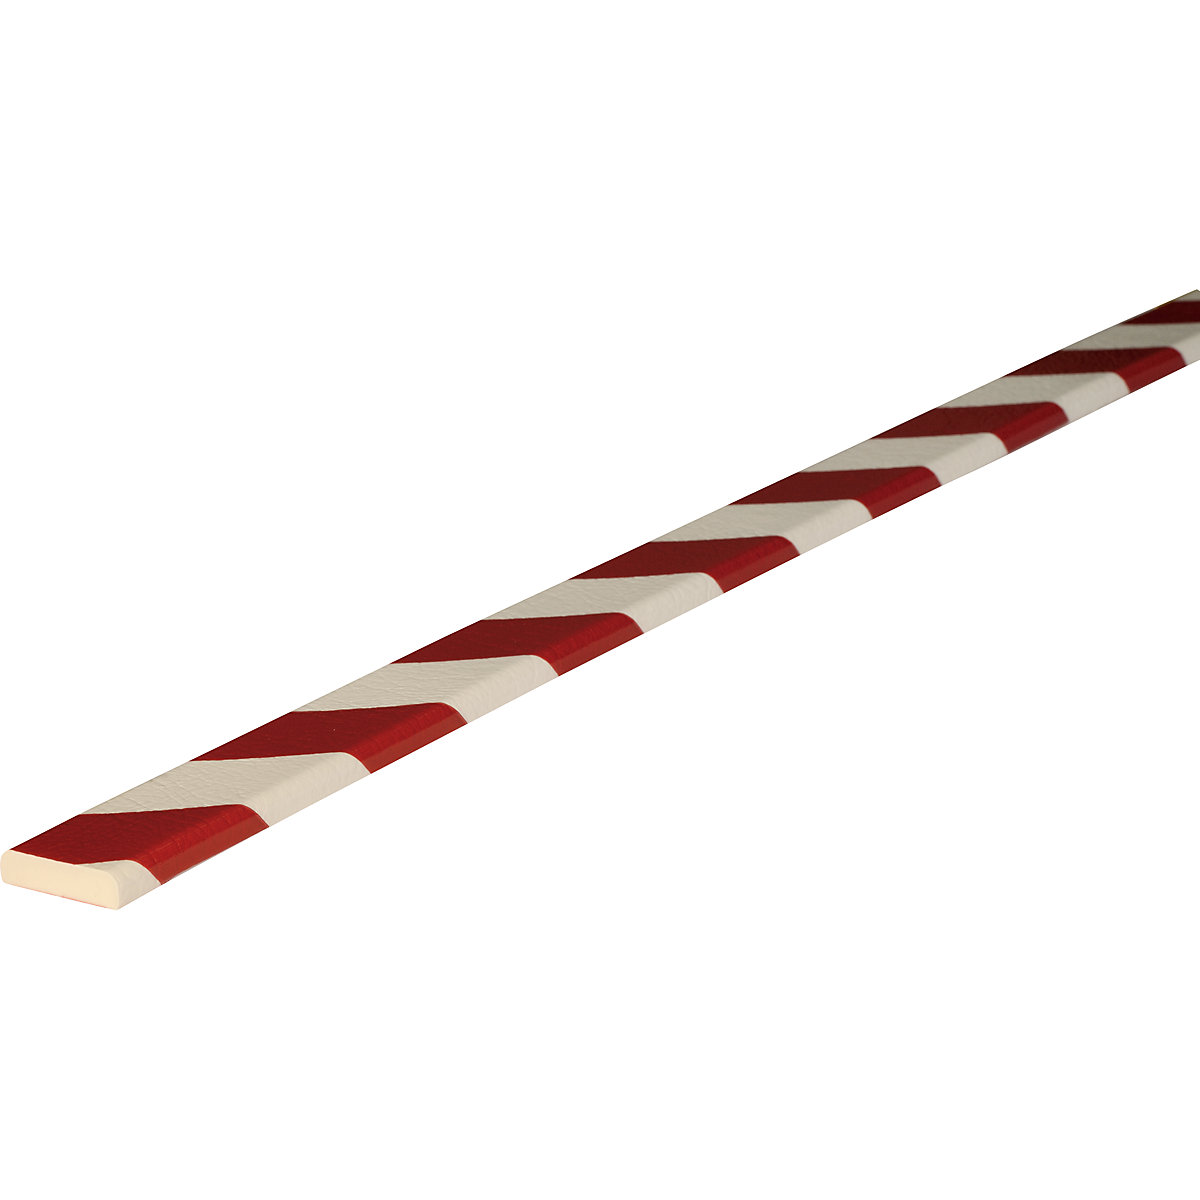 Proteção de superfícies Knuffi® – SHG, tipo F, 1 rolo de 50 m, vermelho/branco-20